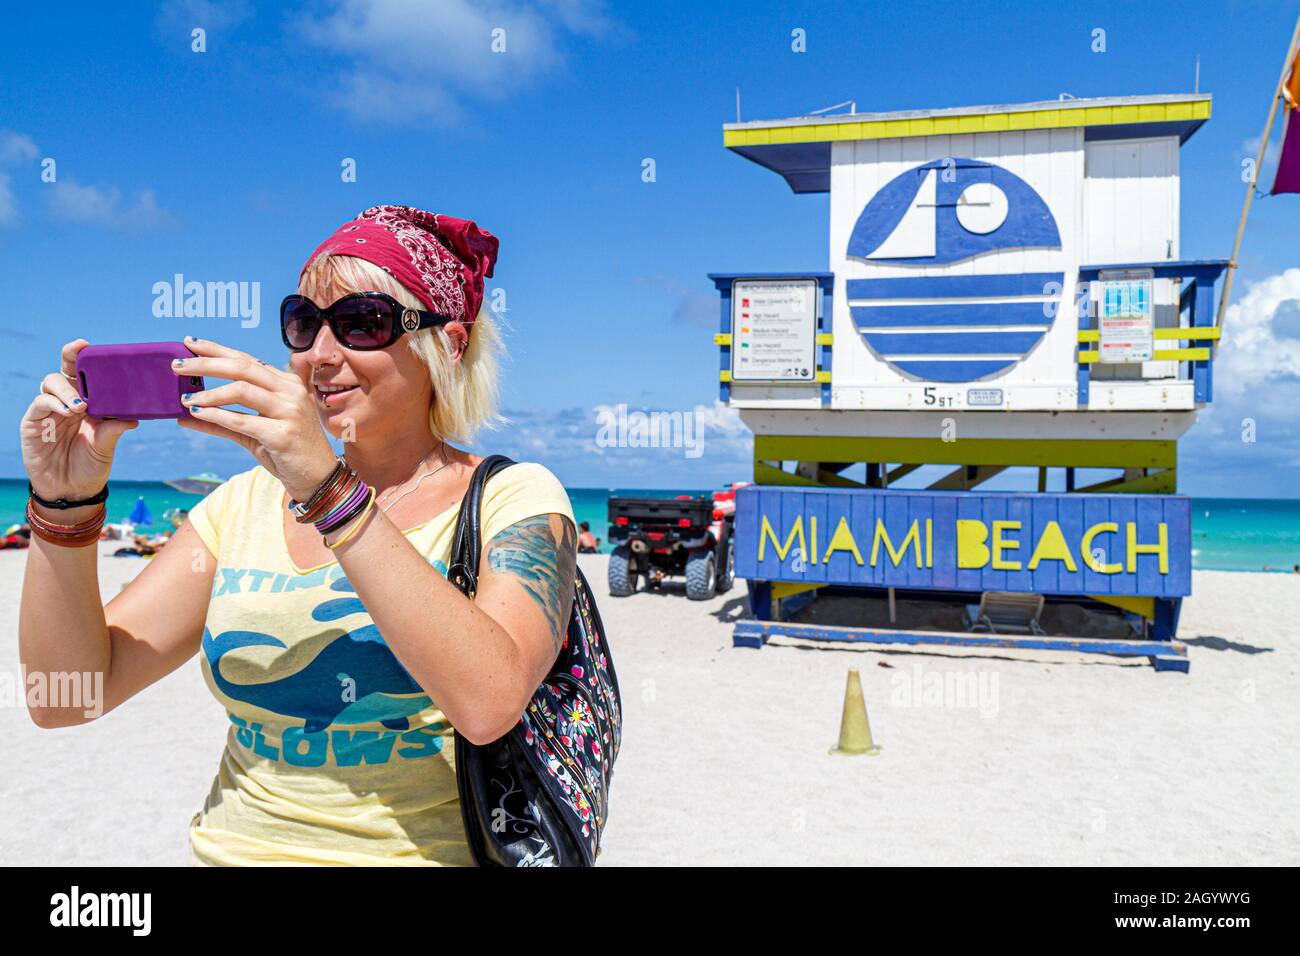 Miami Beach Florida, Océano Atlántico agua adultos mujer mujer mujer mujer mujer dama, cámara, digital, visitantes viaje viaje turismo turístico punto de referencia l Foto de stock